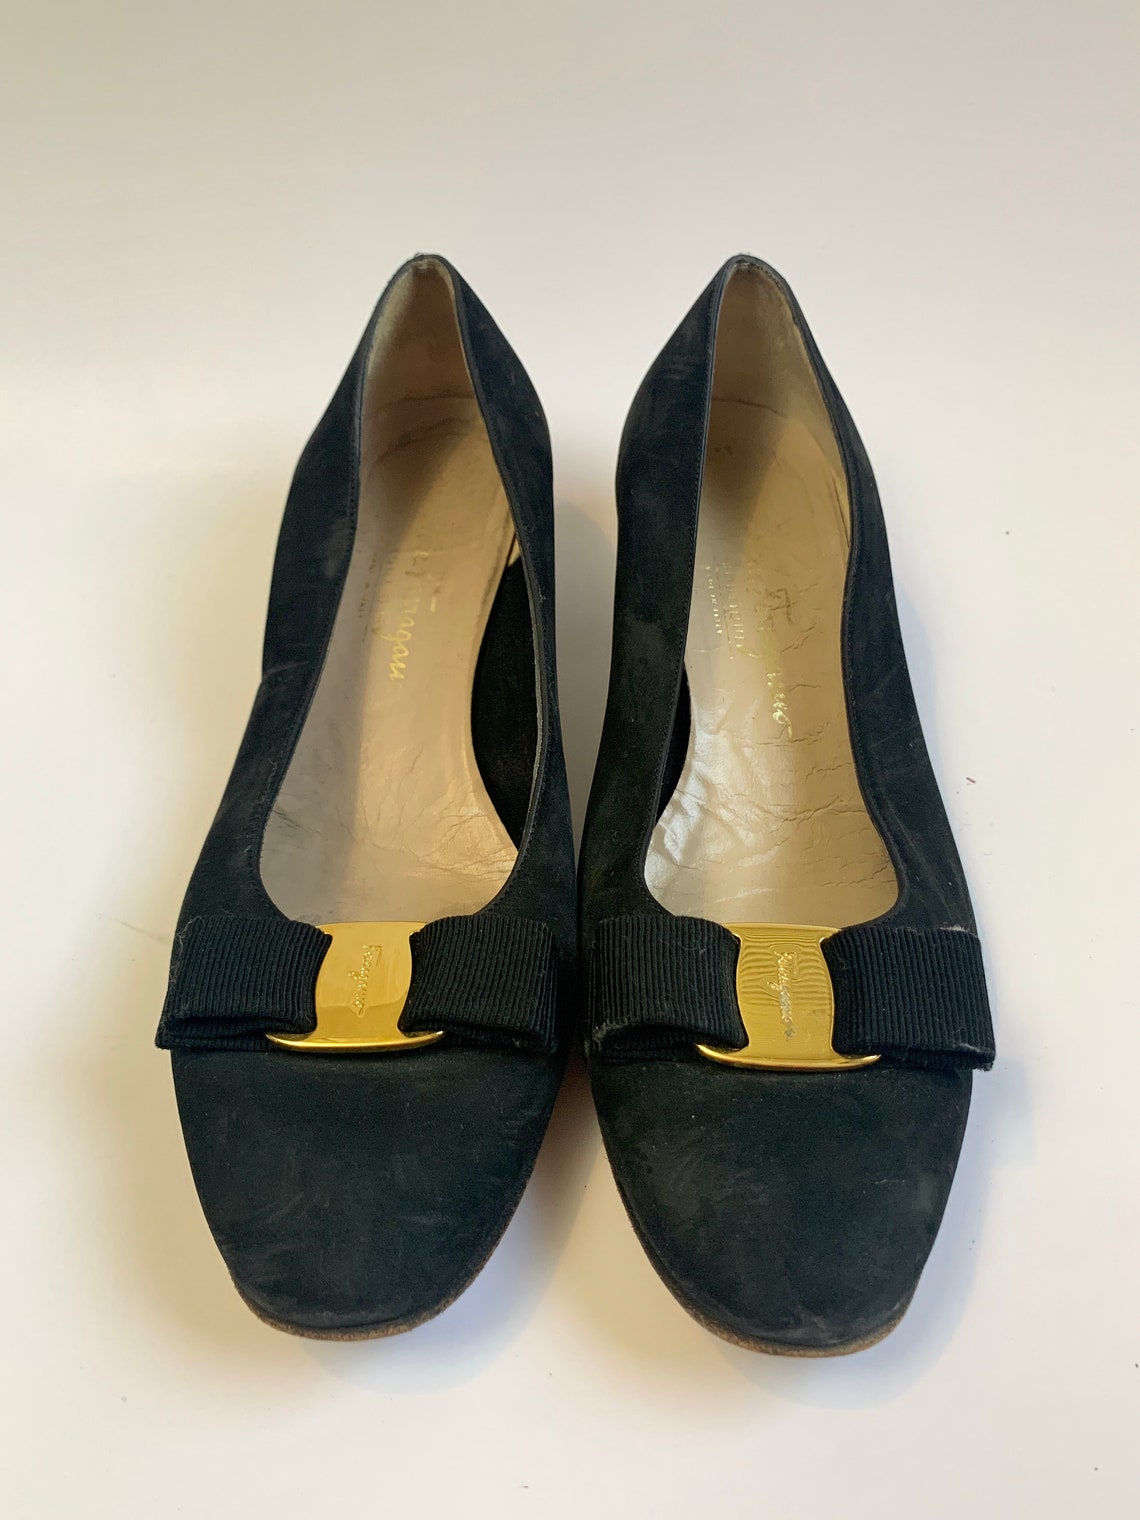 Vintage 1990s Bow Pump Heels // Black Suede Ferragamo Shoes - Etsy